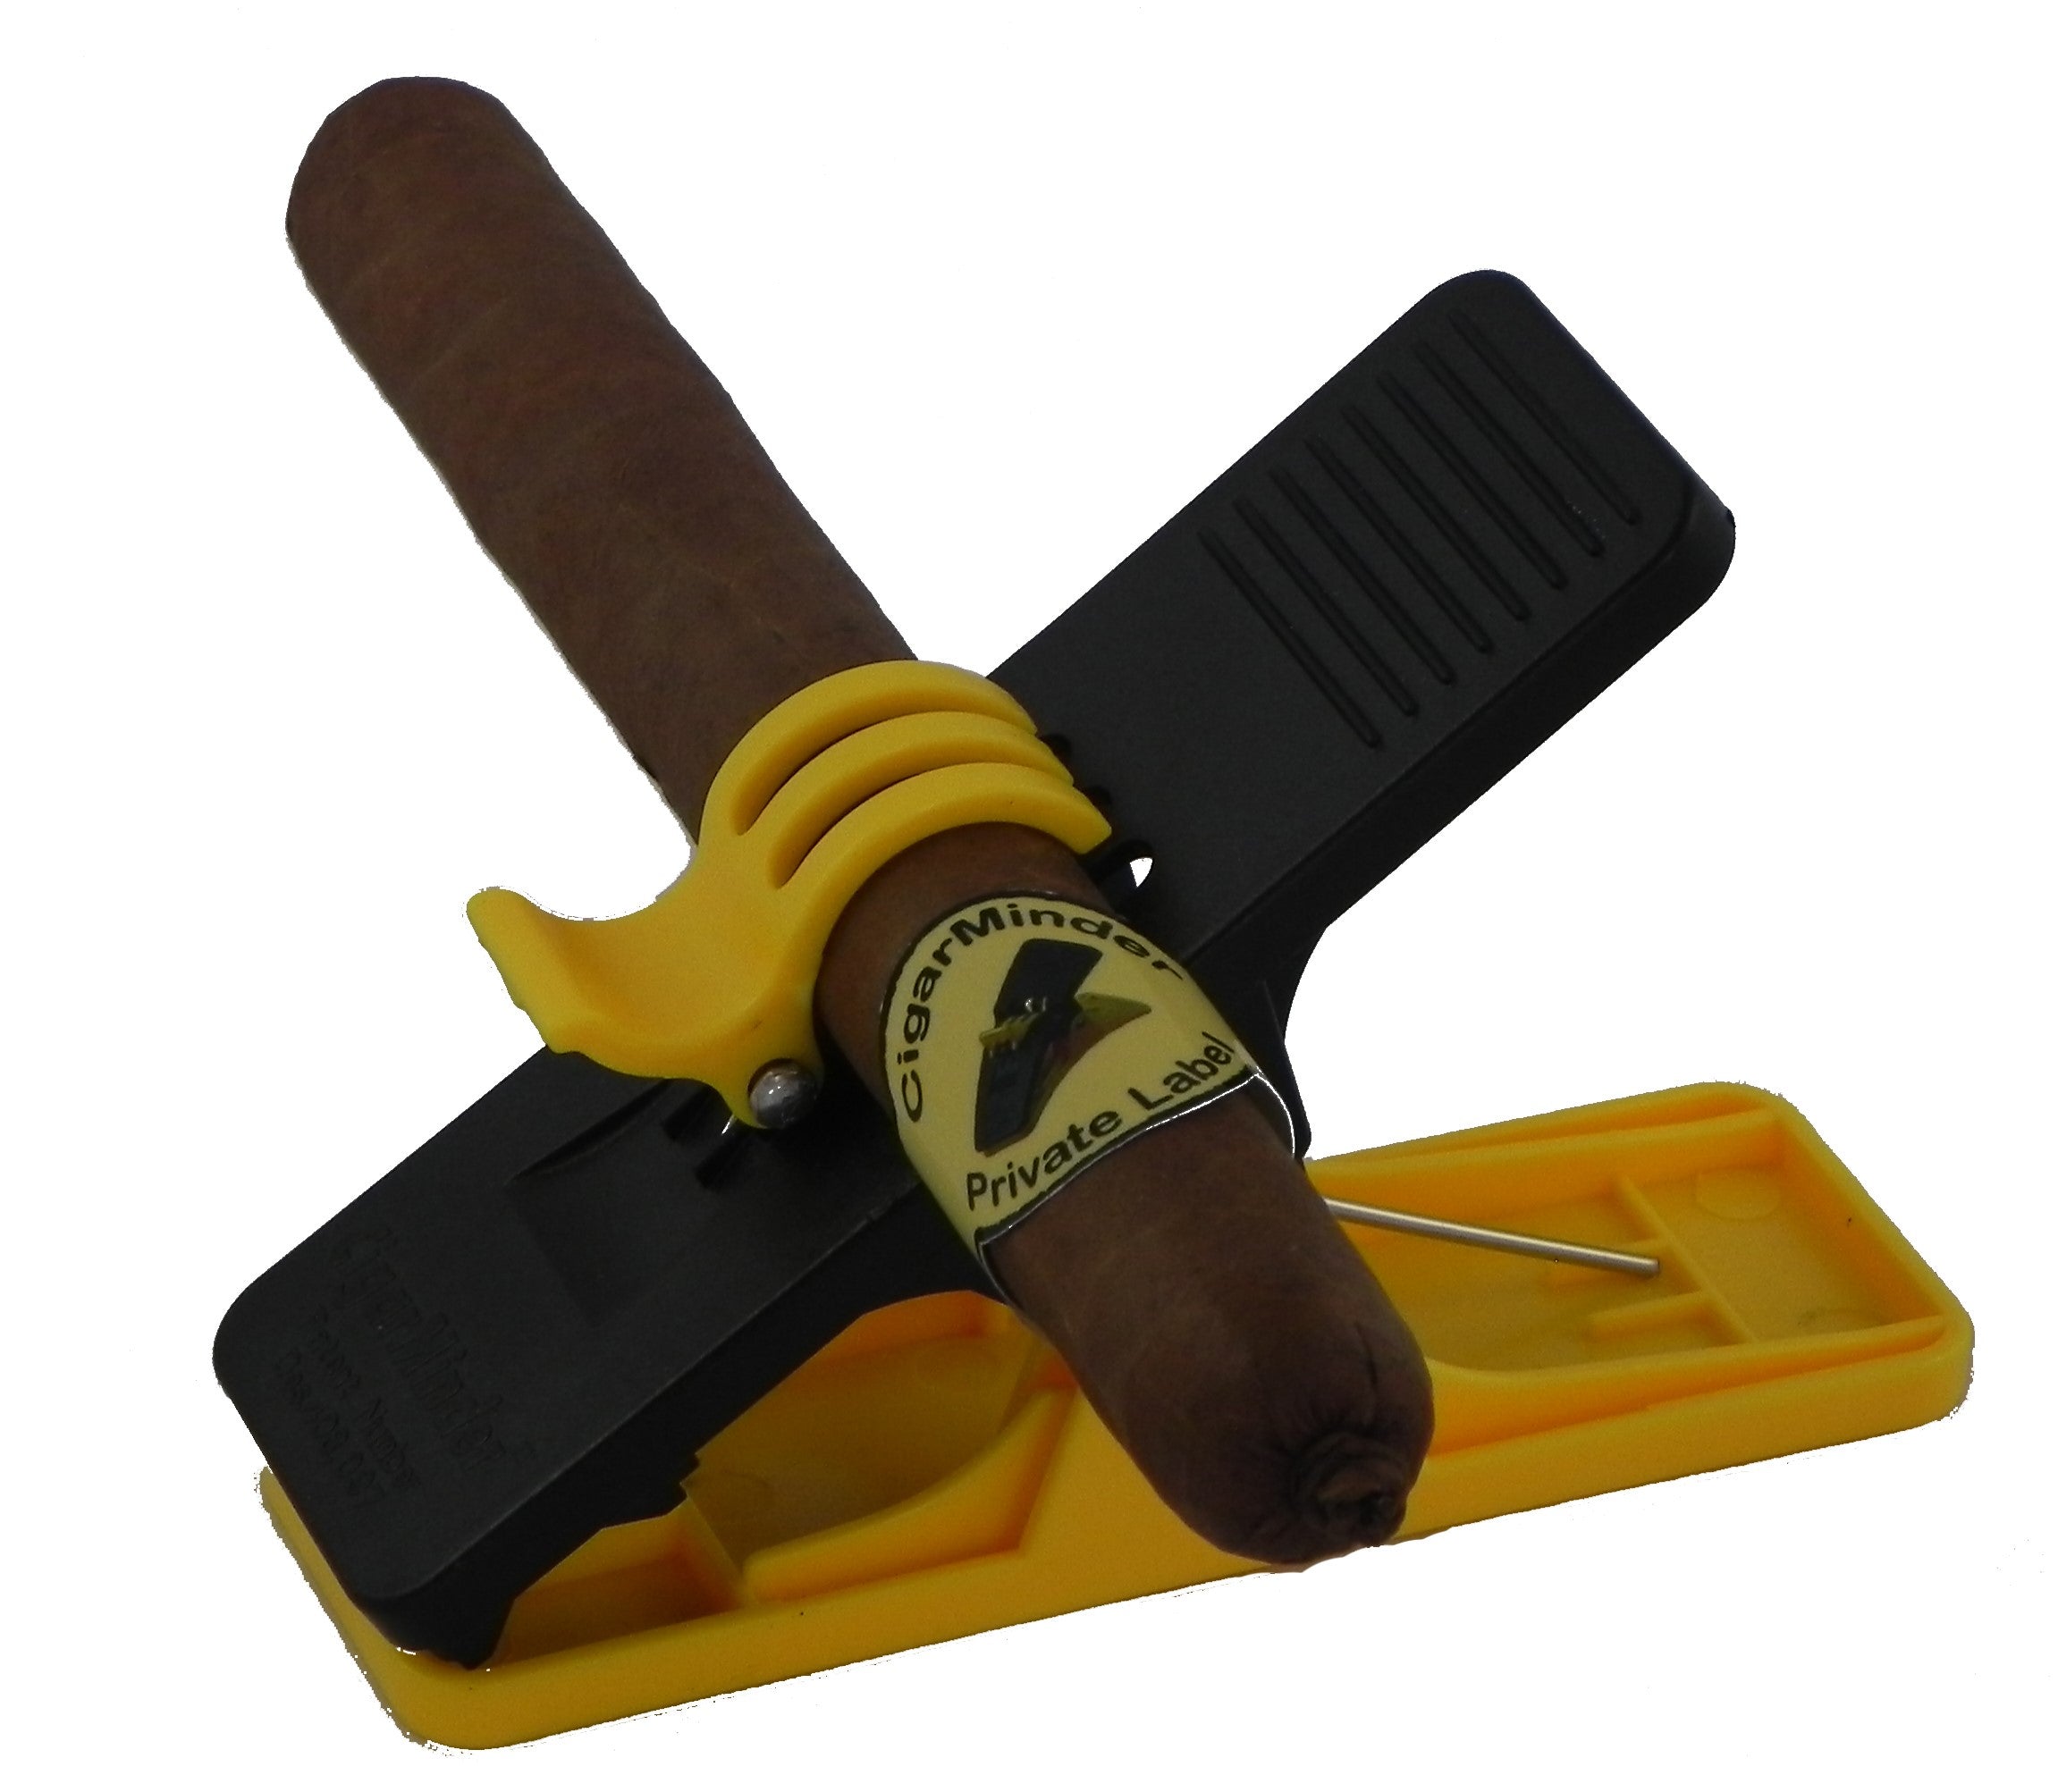 Cigar Minder